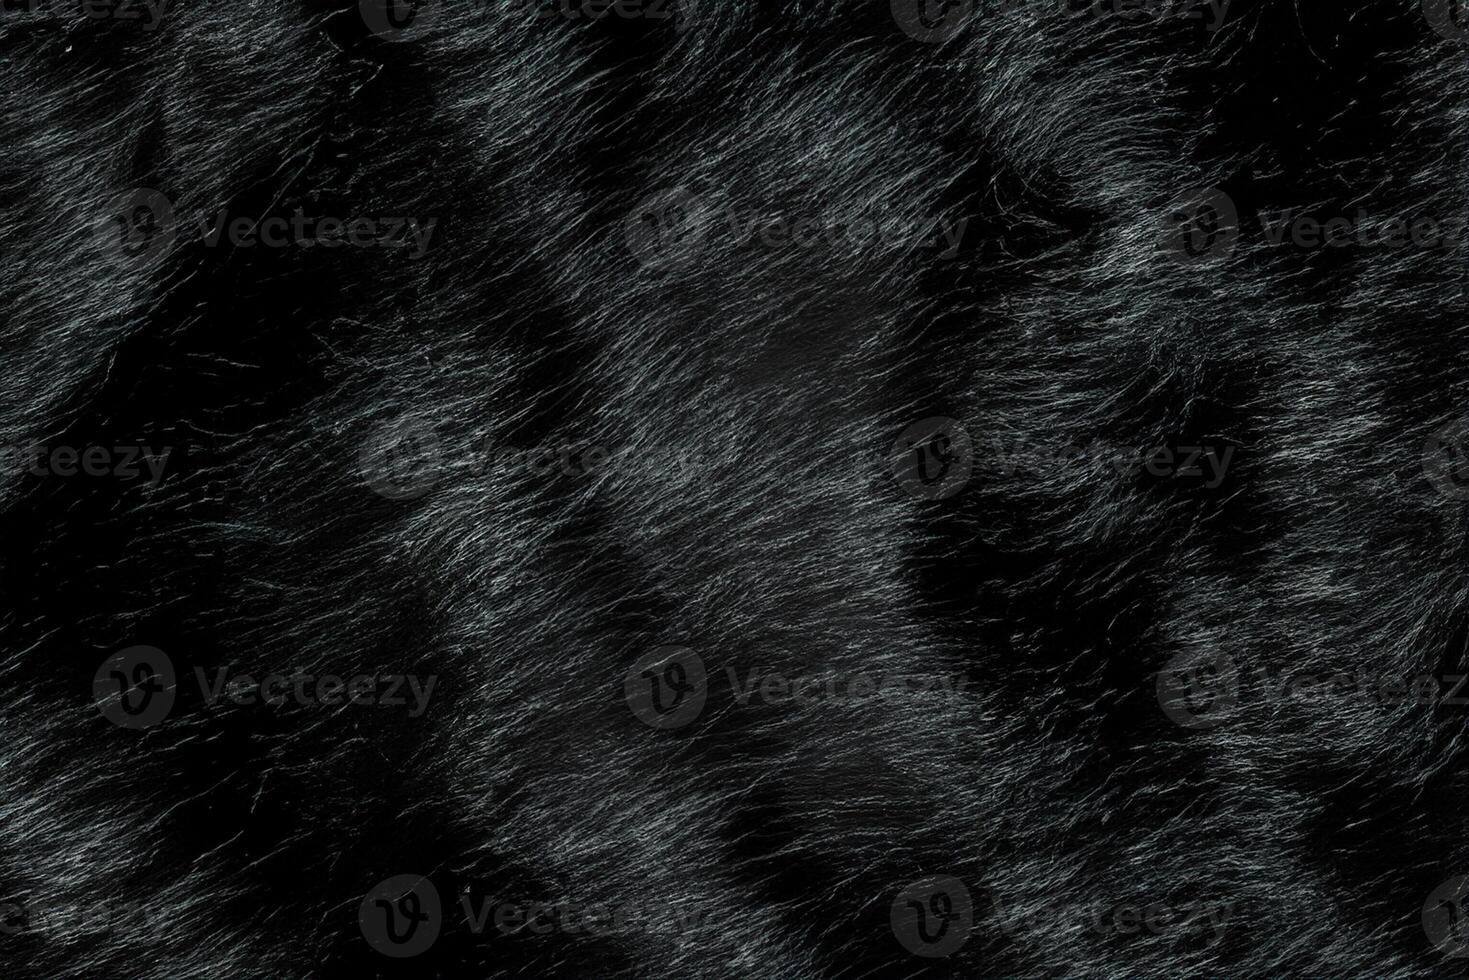 travolgente realismo, sintetico animale lungo capelli struttura con nero pelliccia. foto